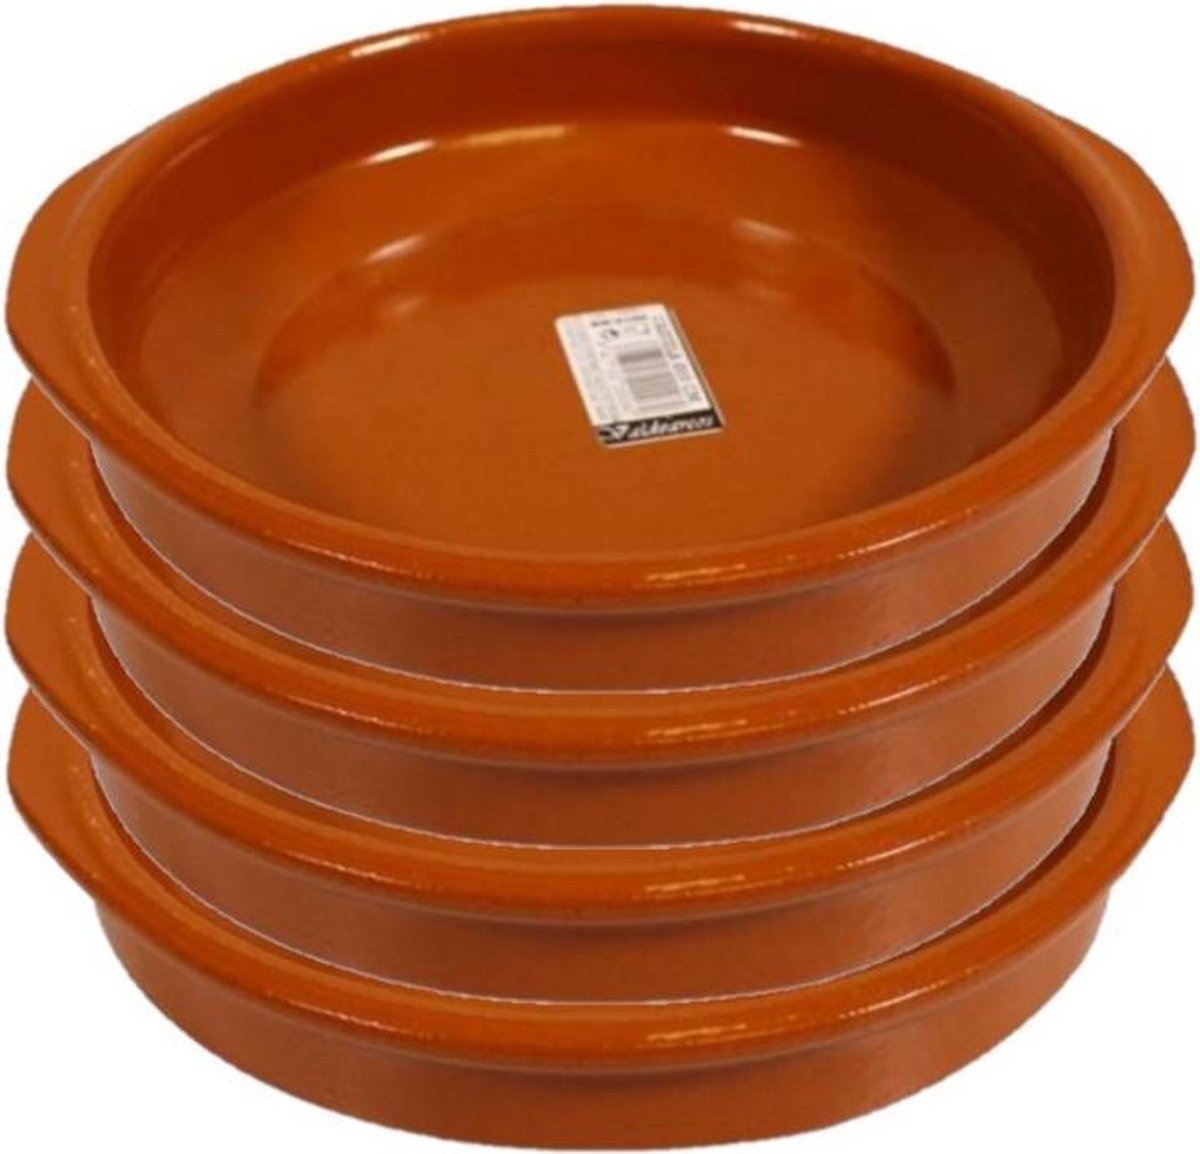 Set van 6x stuks tapas borden/schalen Alicante met handvatten 20 cm - Tapas serveerschalen/borden/ovenschalen